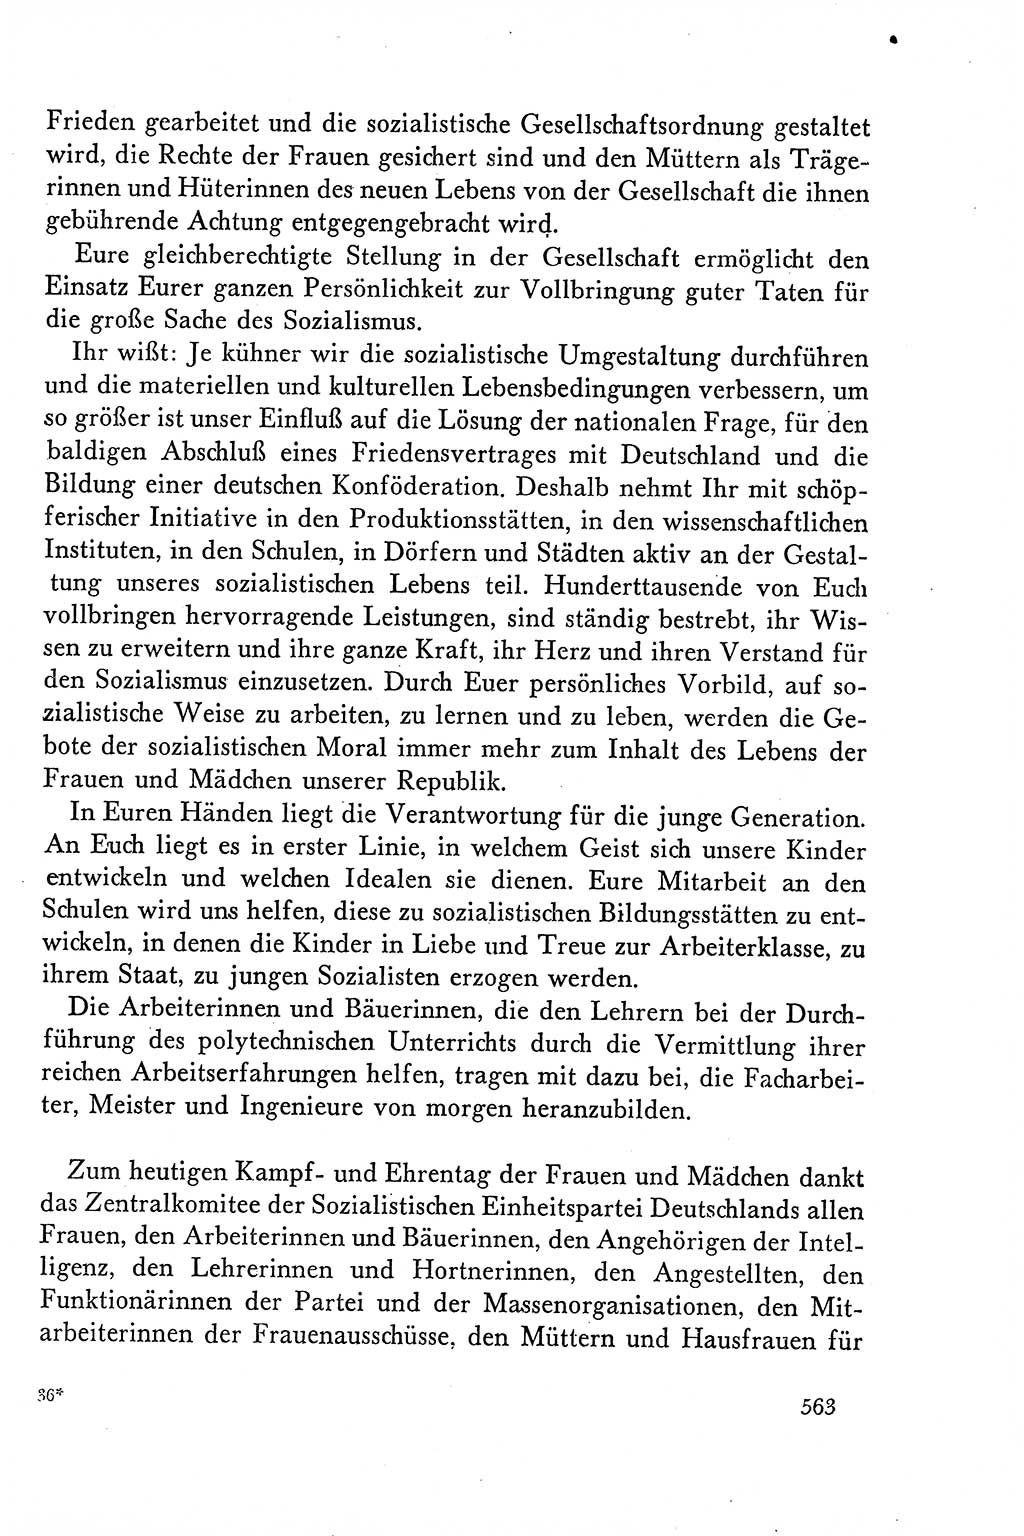 Dokumente der Sozialistischen Einheitspartei Deutschlands (SED) [Deutsche Demokratische Republik (DDR)] 1958-1959, Seite 563 (Dok. SED DDR 1958-1959, S. 563)